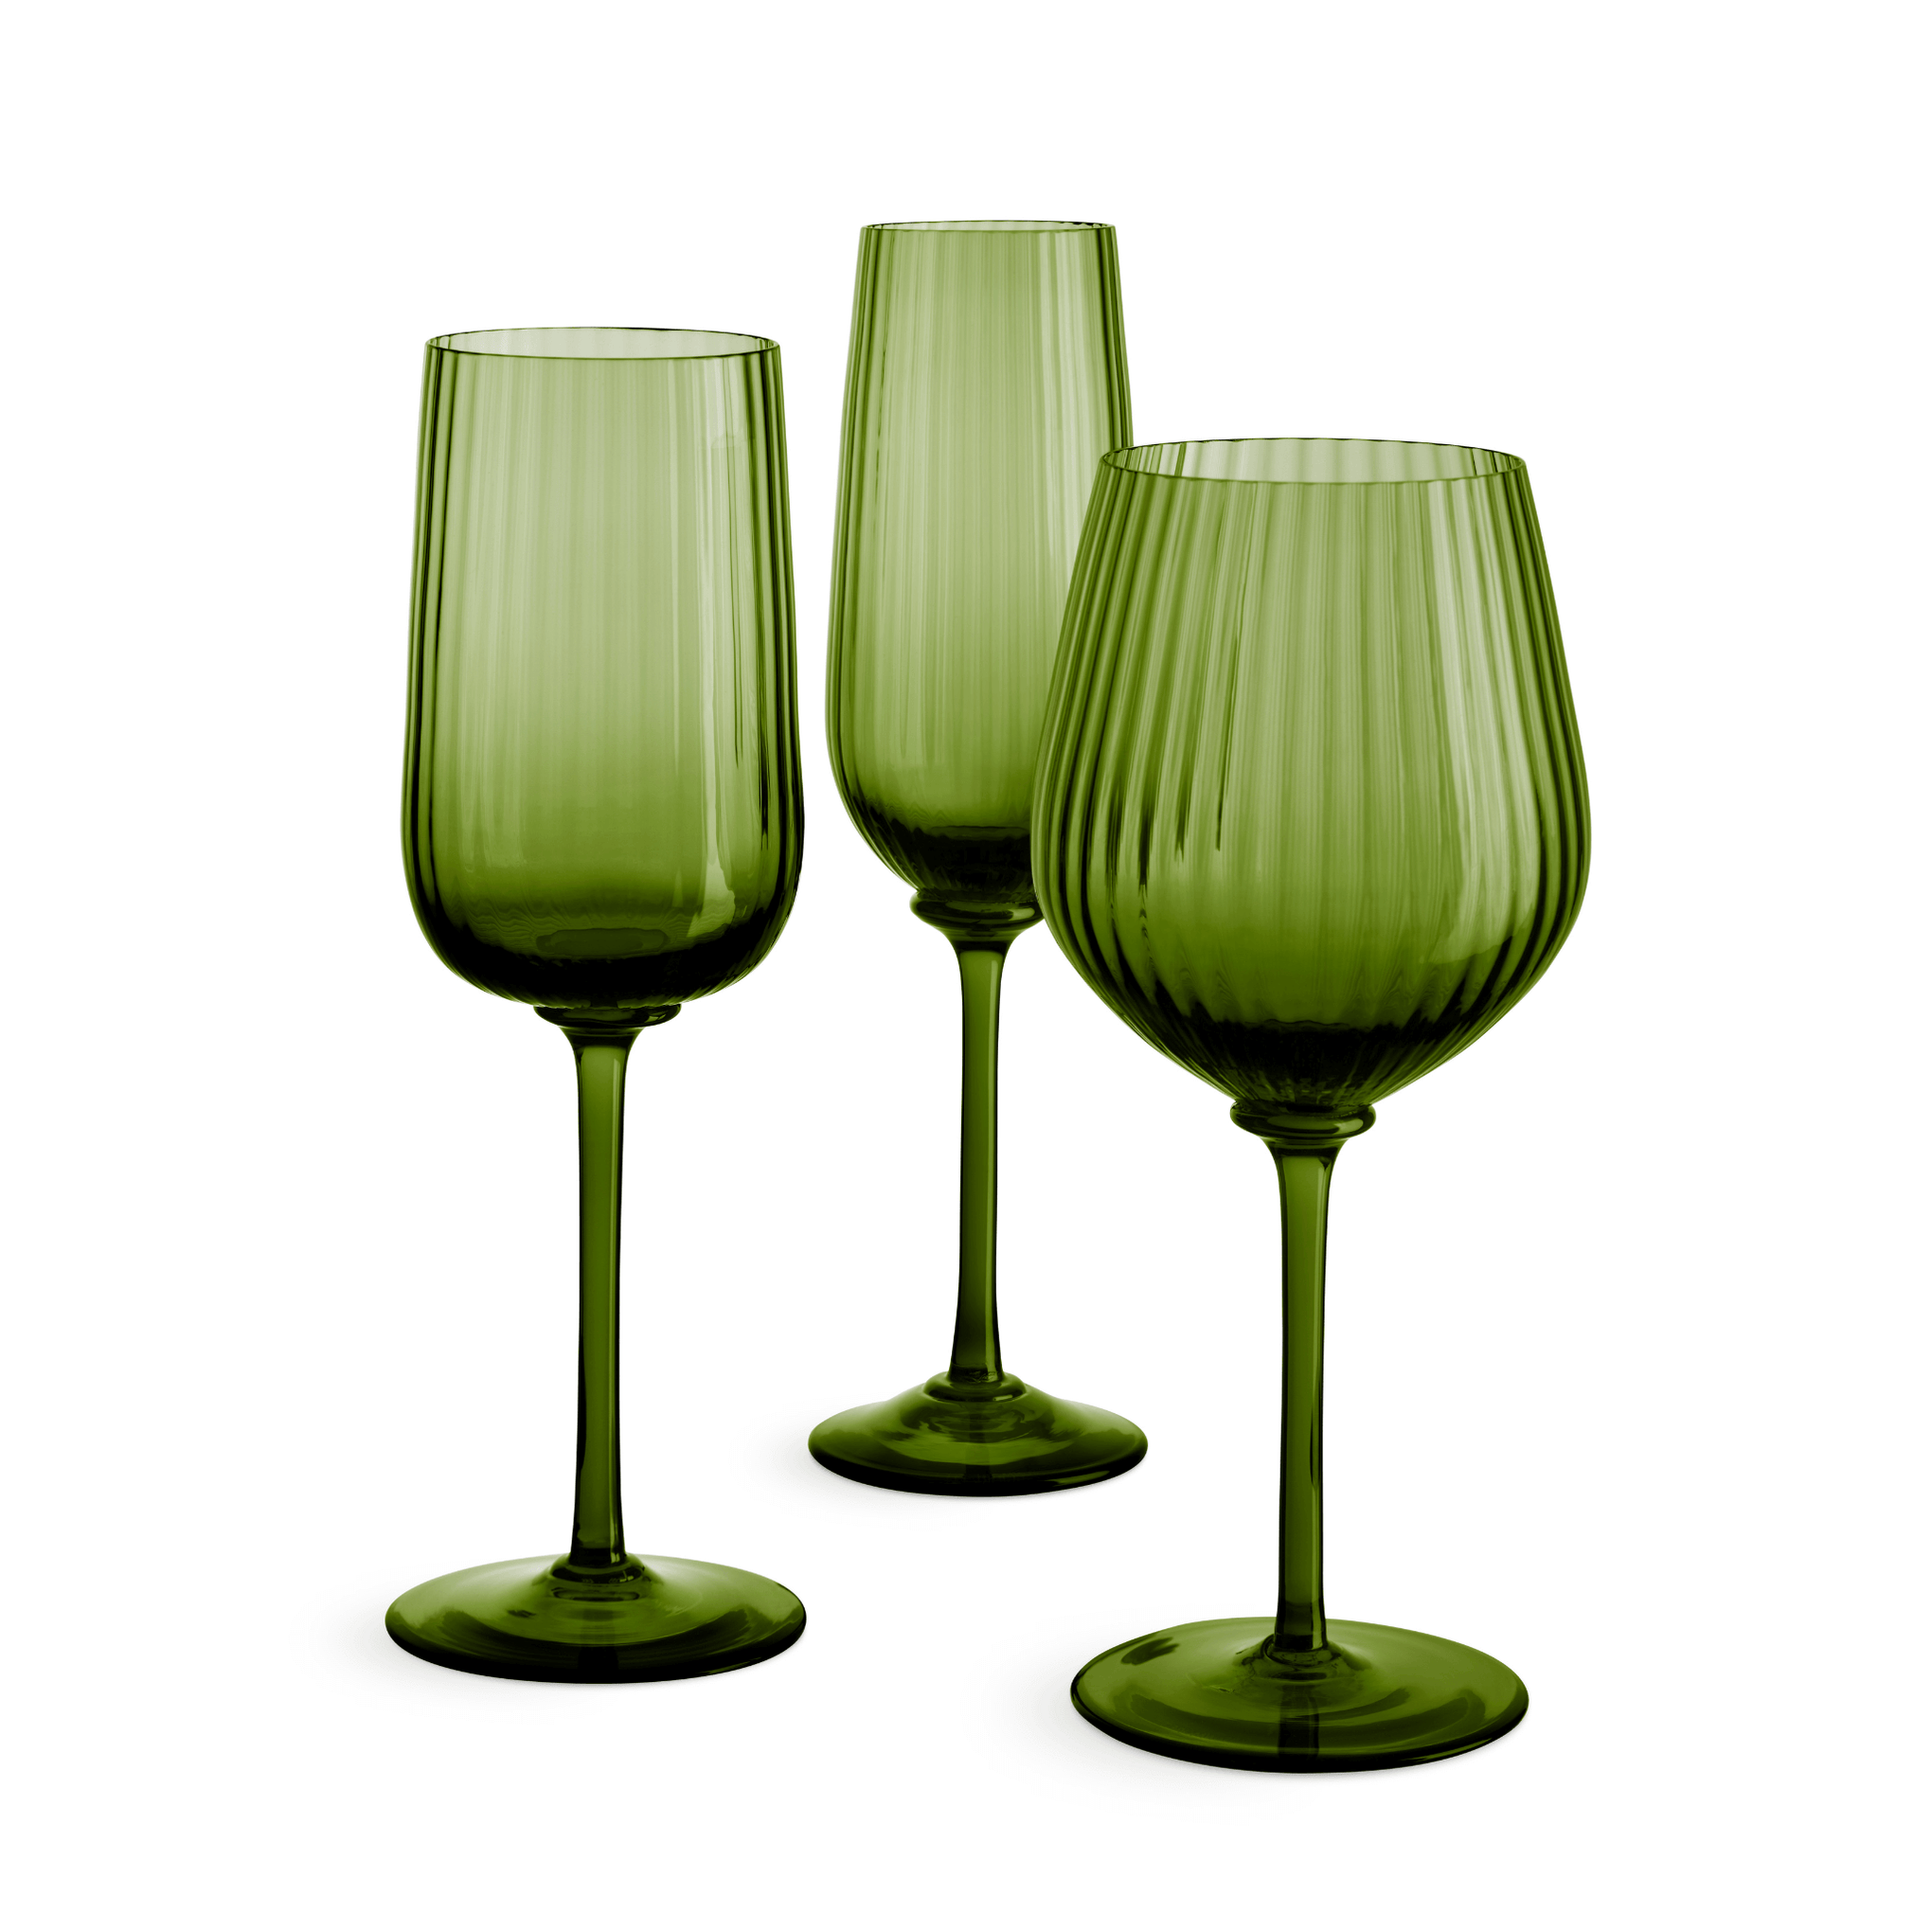 Nason Moretti Cote d’Or Murano White Wine Glass Pistachio Green